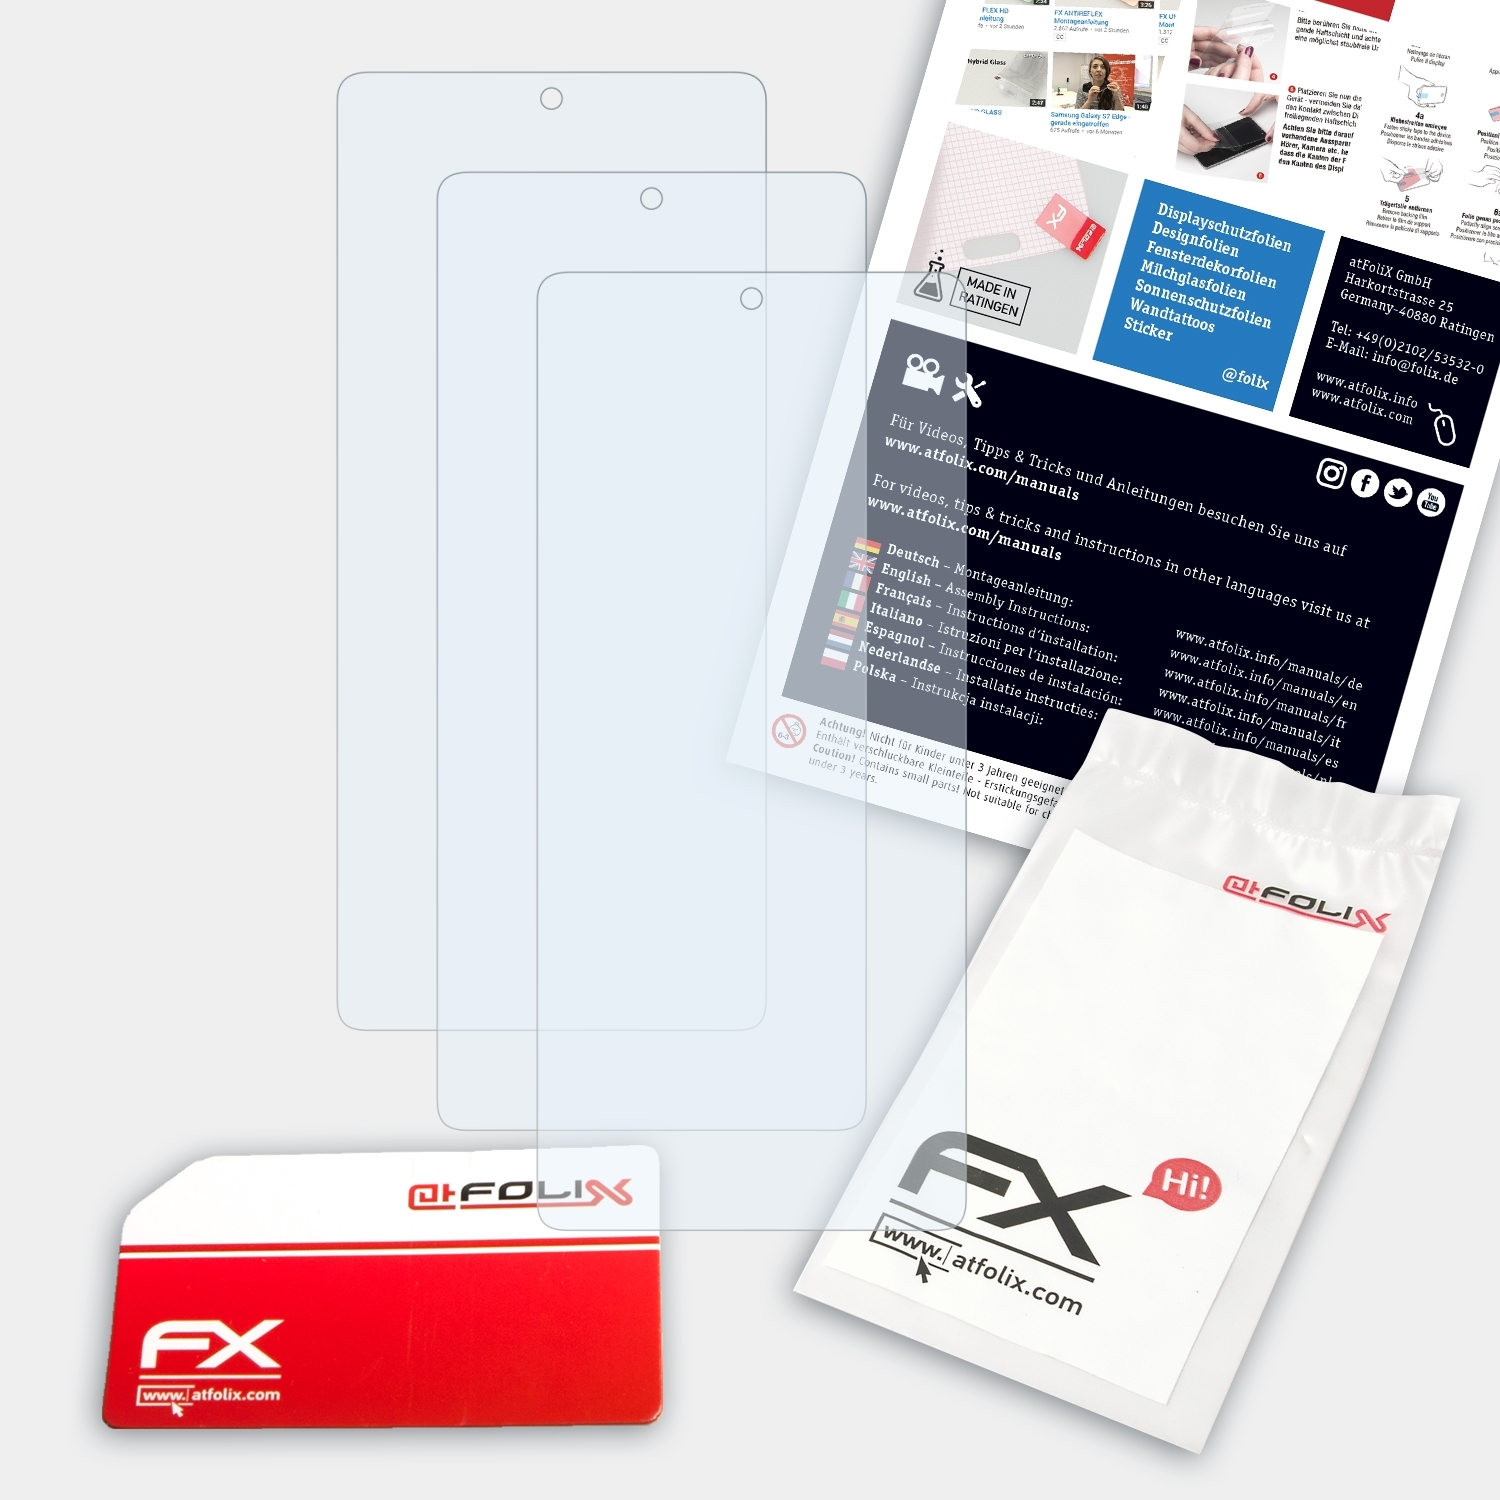 ATFOLIX 3x FX-Clear Displayschutz(für 11T) Xiaomi